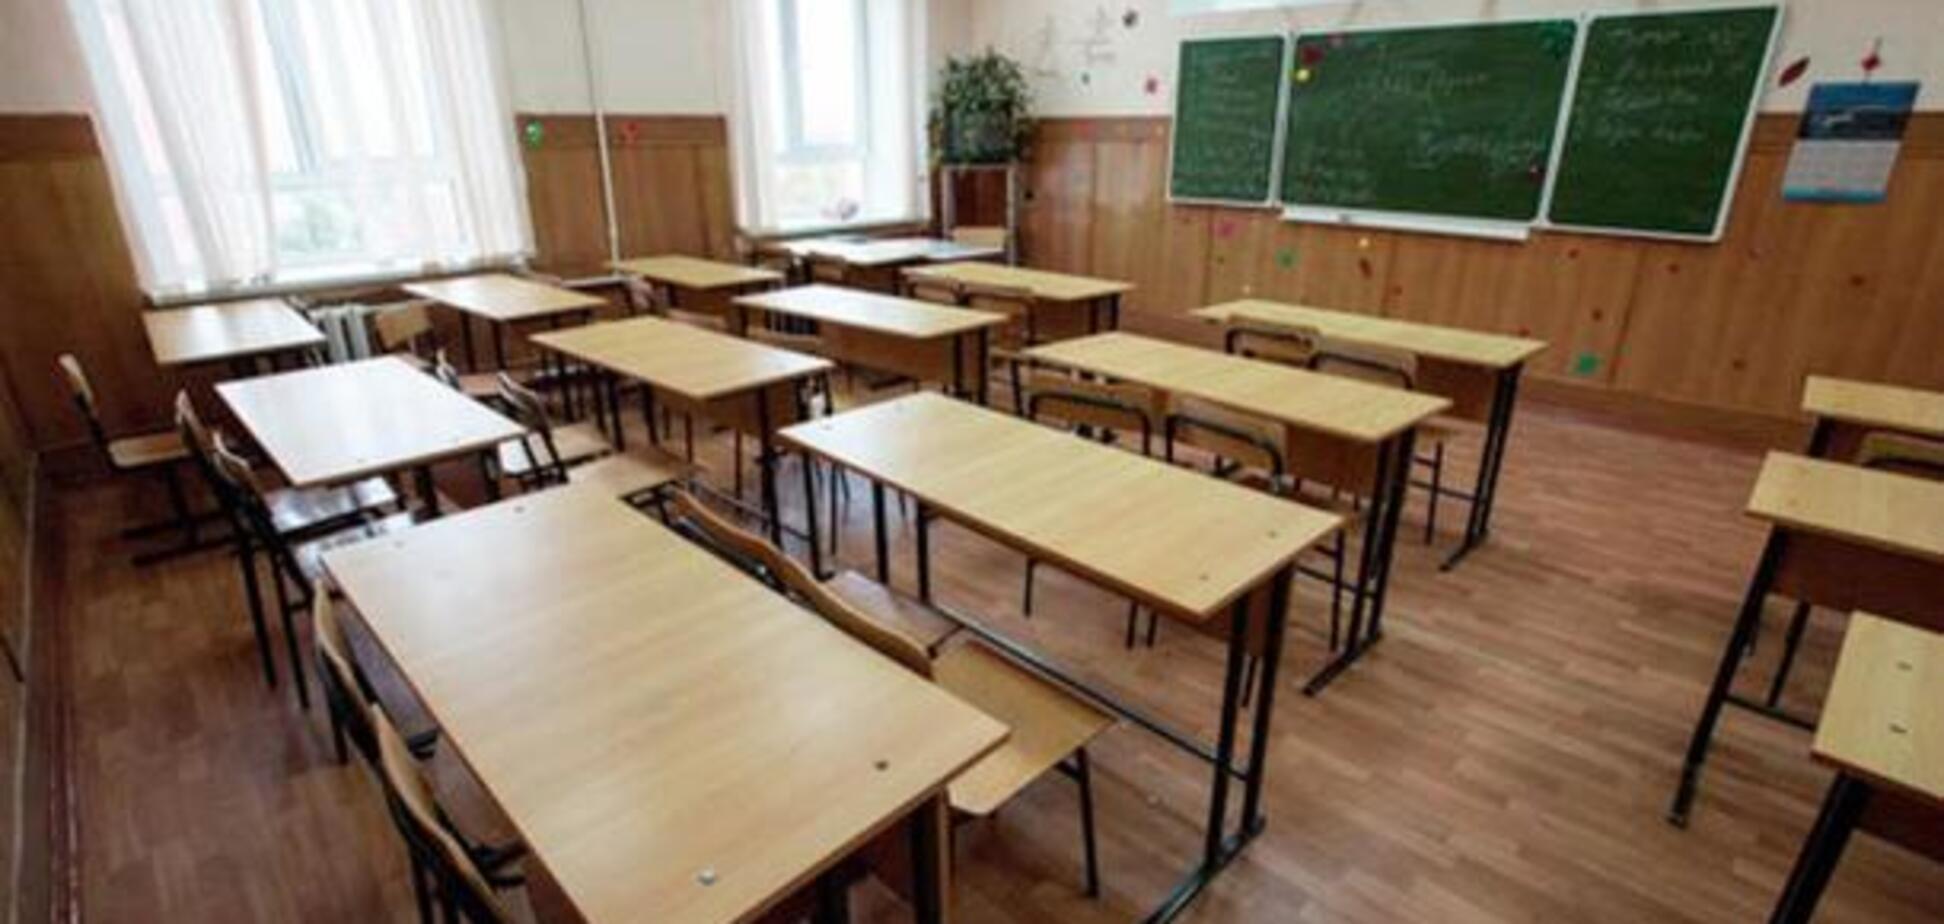 Через спалах грипу в Києві закрито понад 50 шкіл